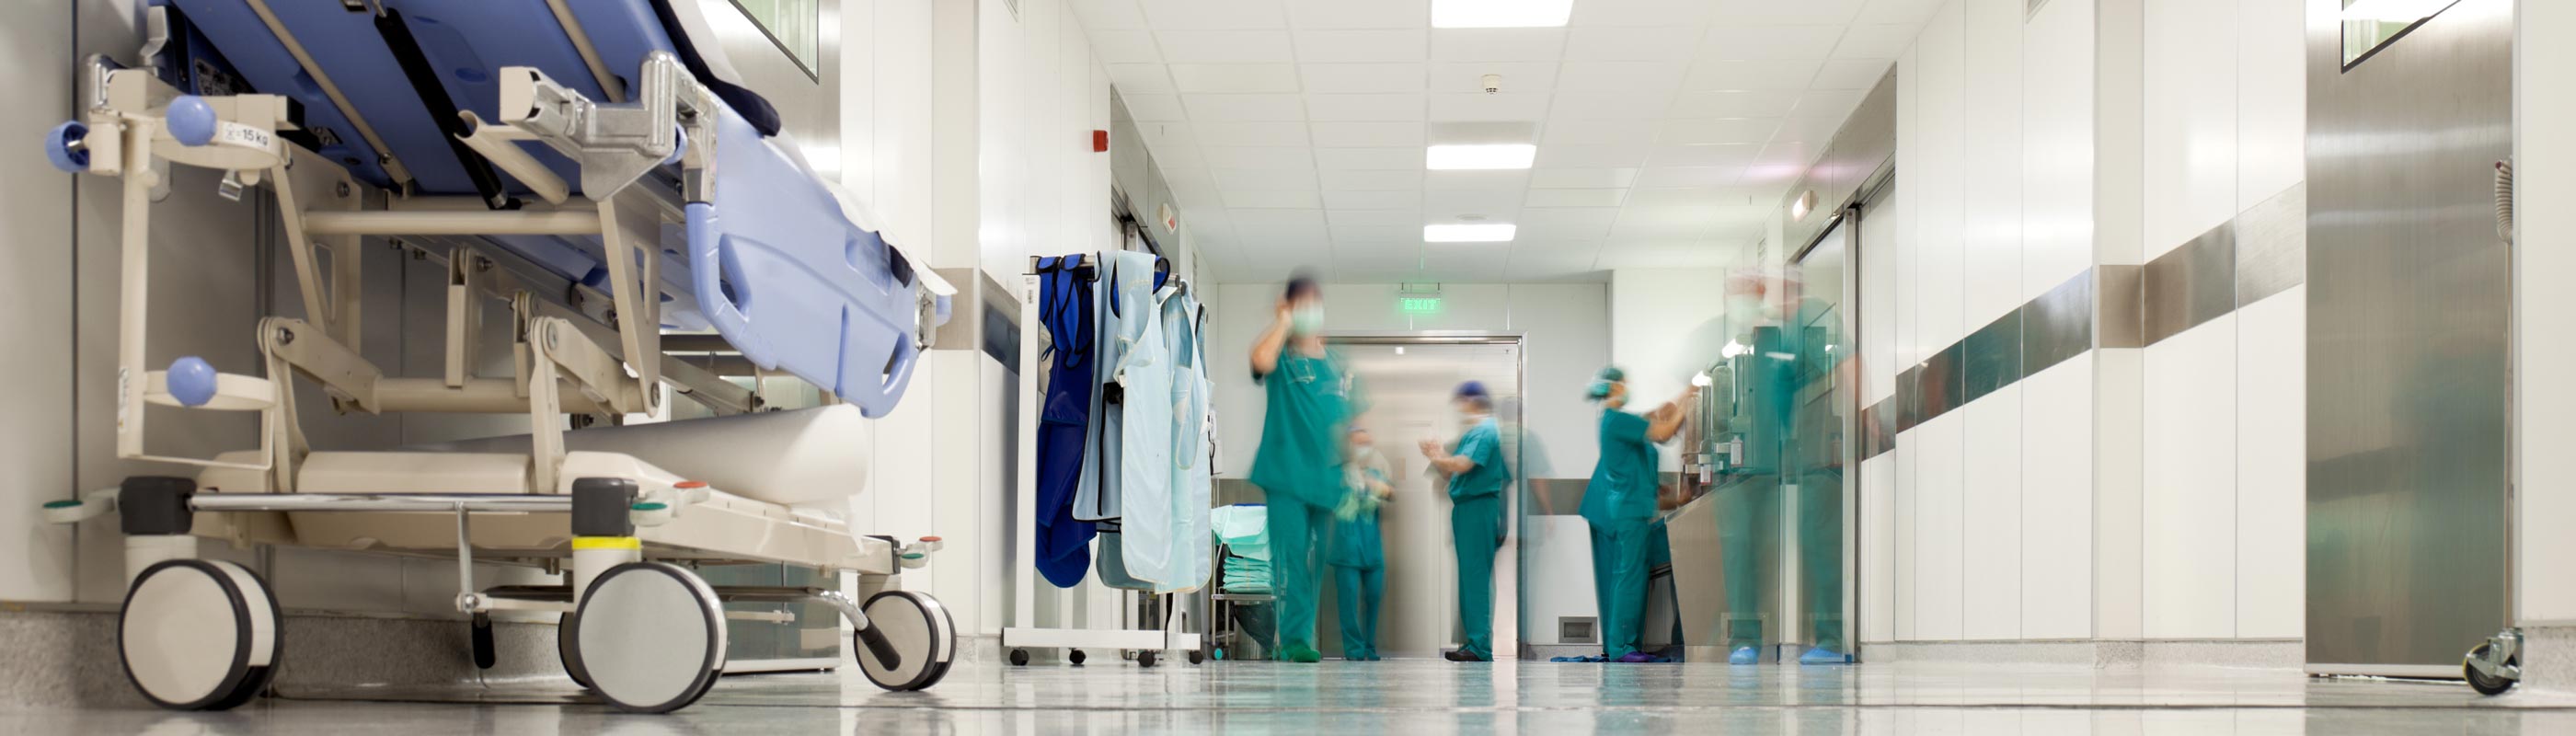 Doctors blurred in hallway